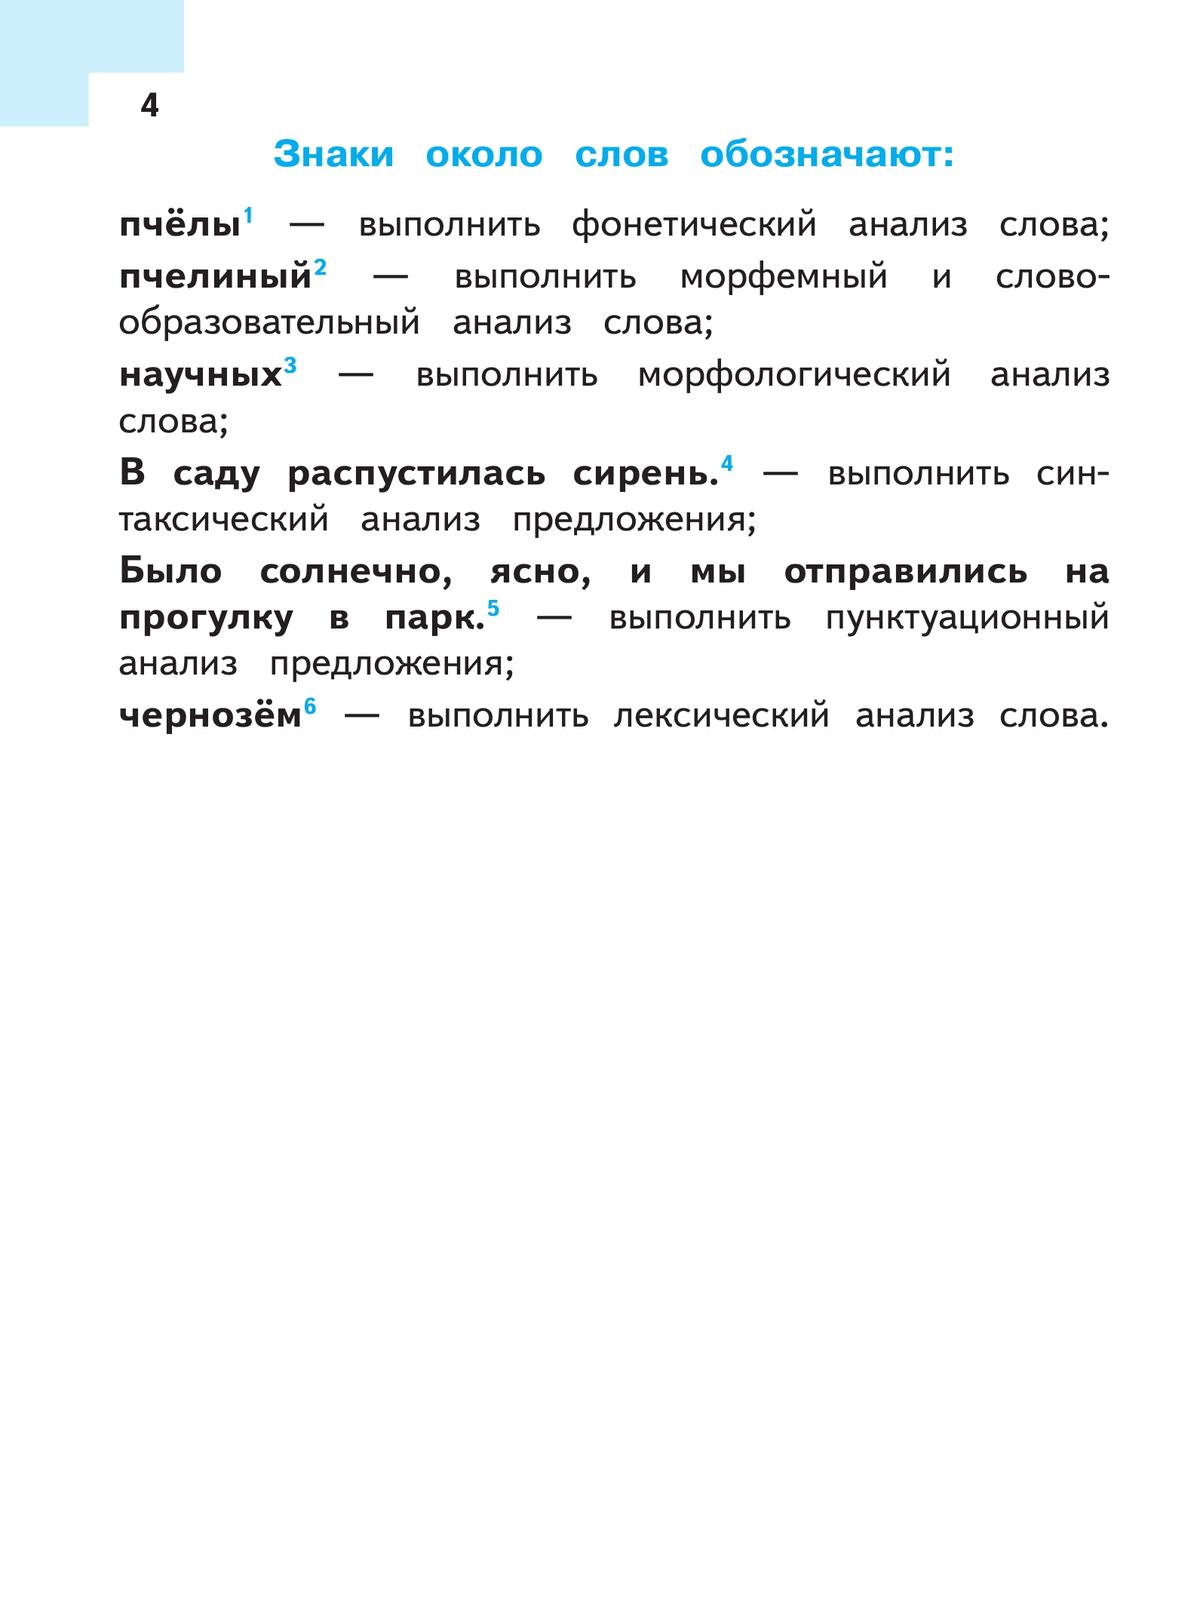 Русский язык. 8 класс. Учебное пособие. В 3 ч. Часть 2 (для слабовидящих обучающихся) 3